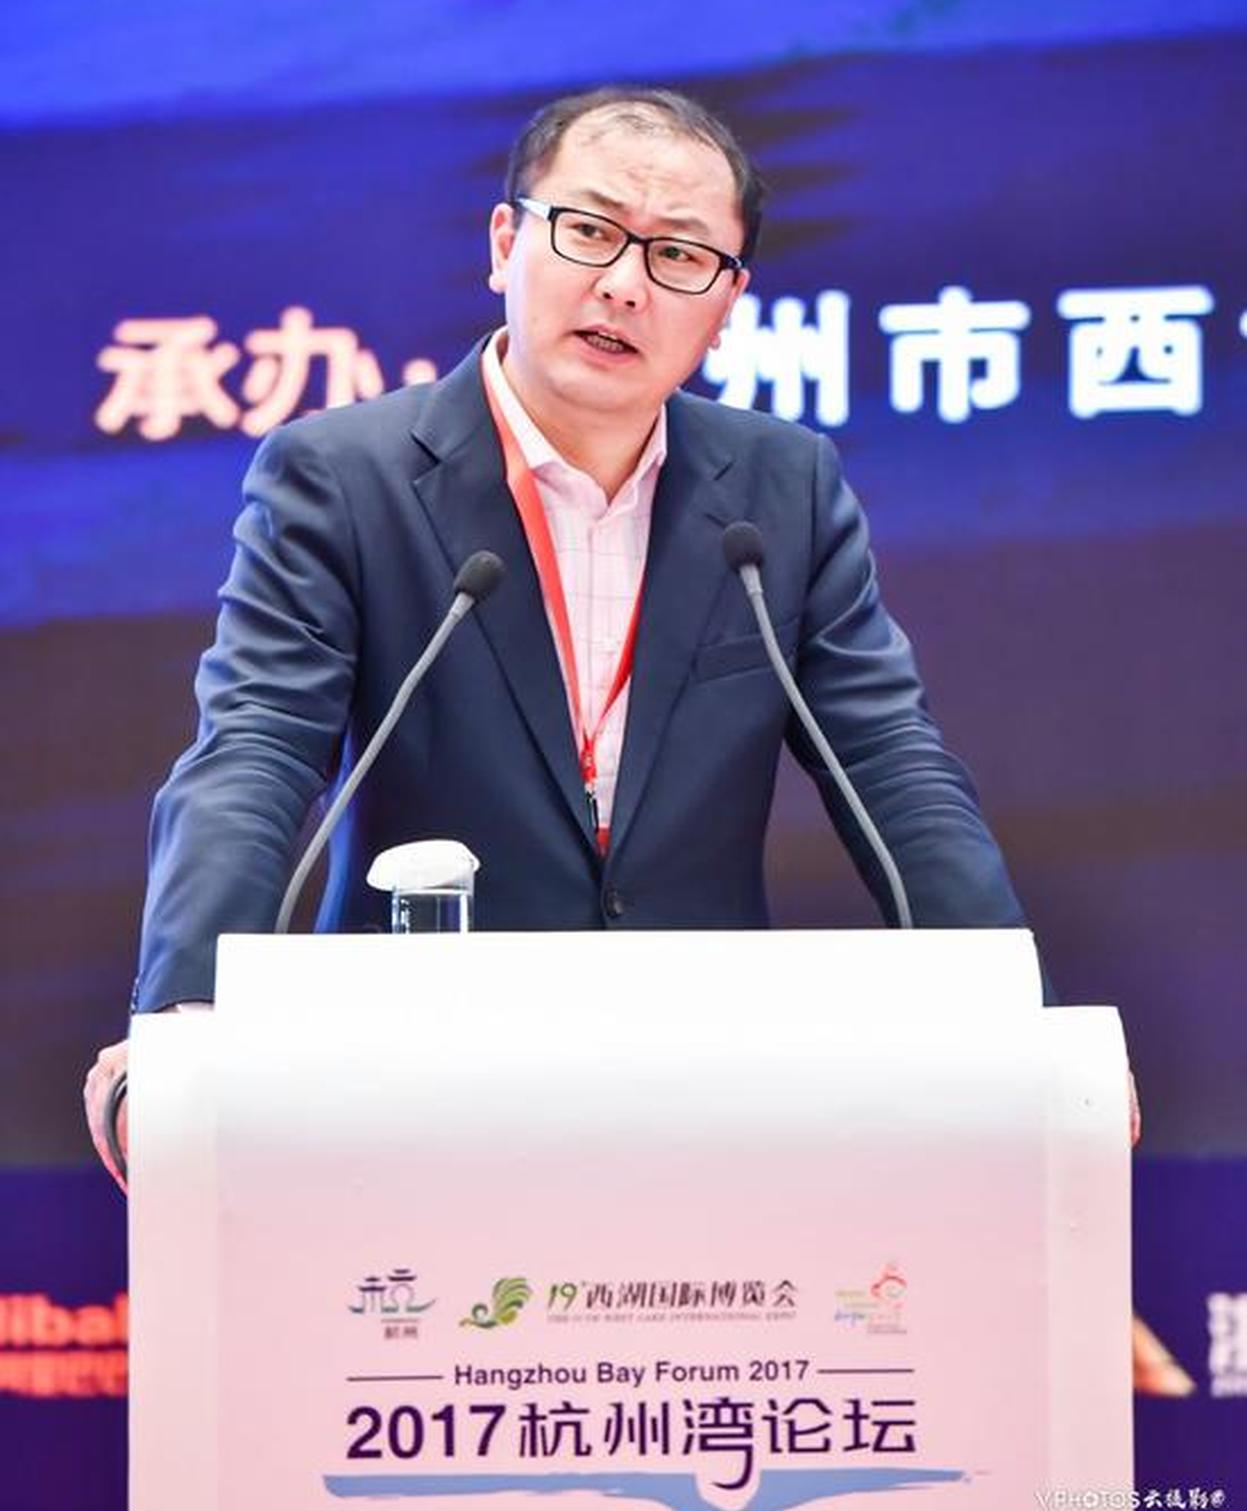 上海重阳投资管理公司总裁王庆